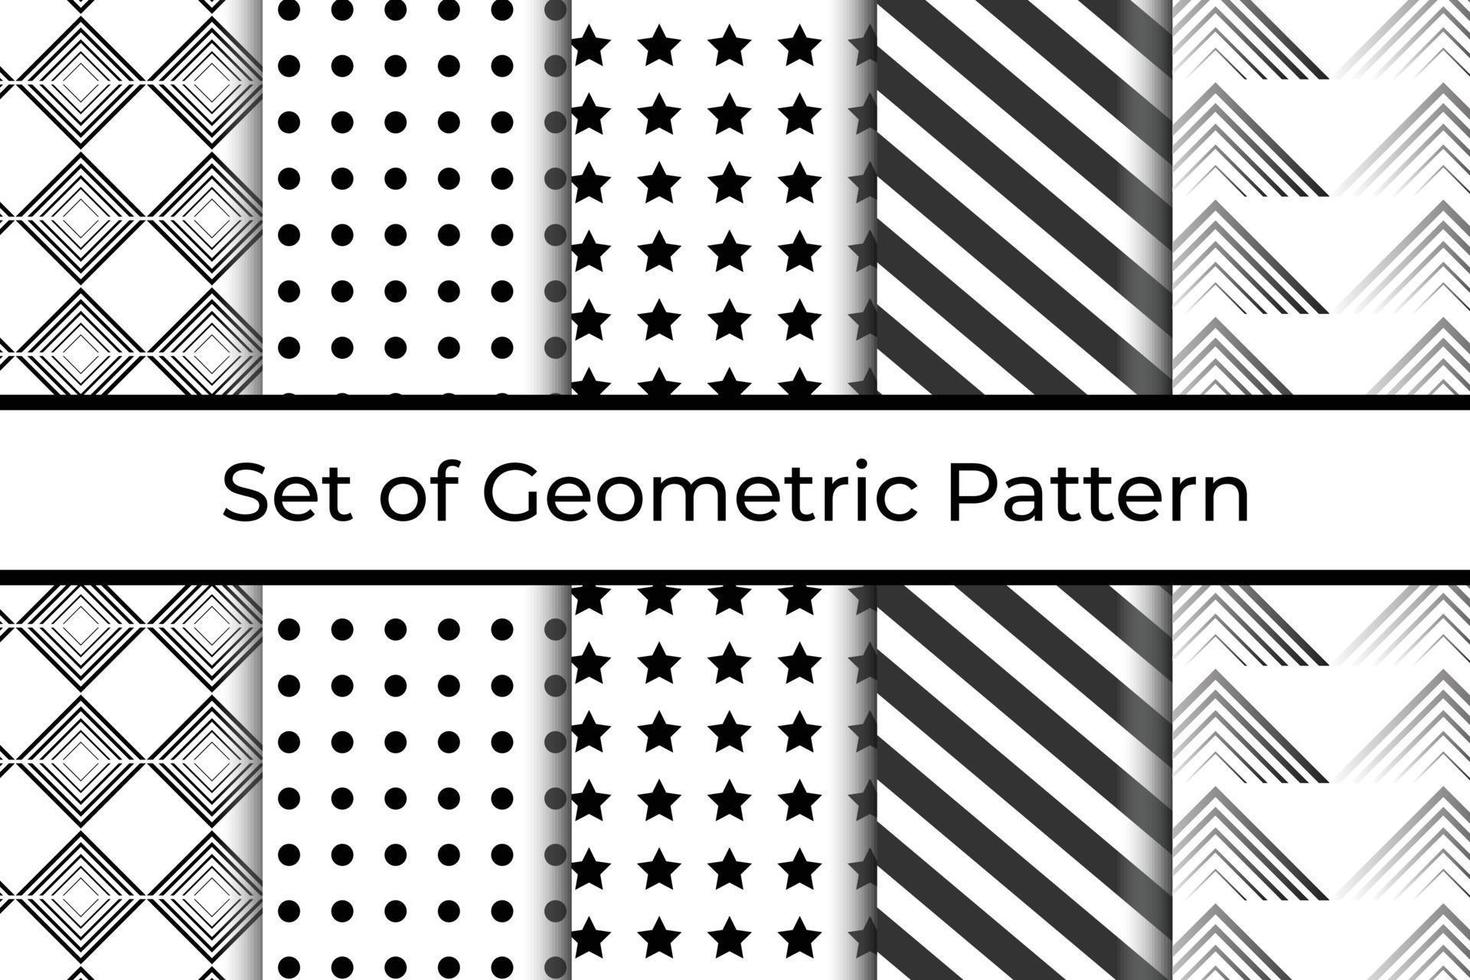 einstellen von 5 abstrakt geometrisch Muster Design. vektor